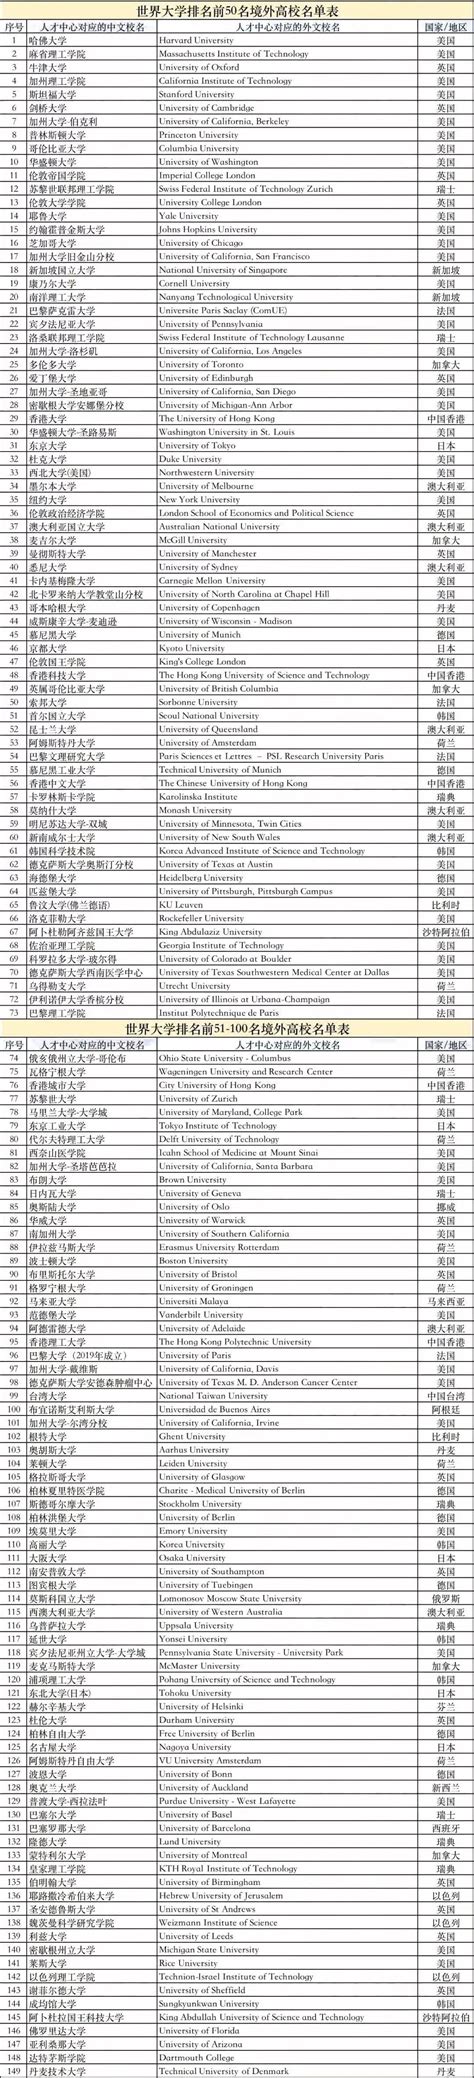 上海公布符合留学生落户世界排名前100的院校名单